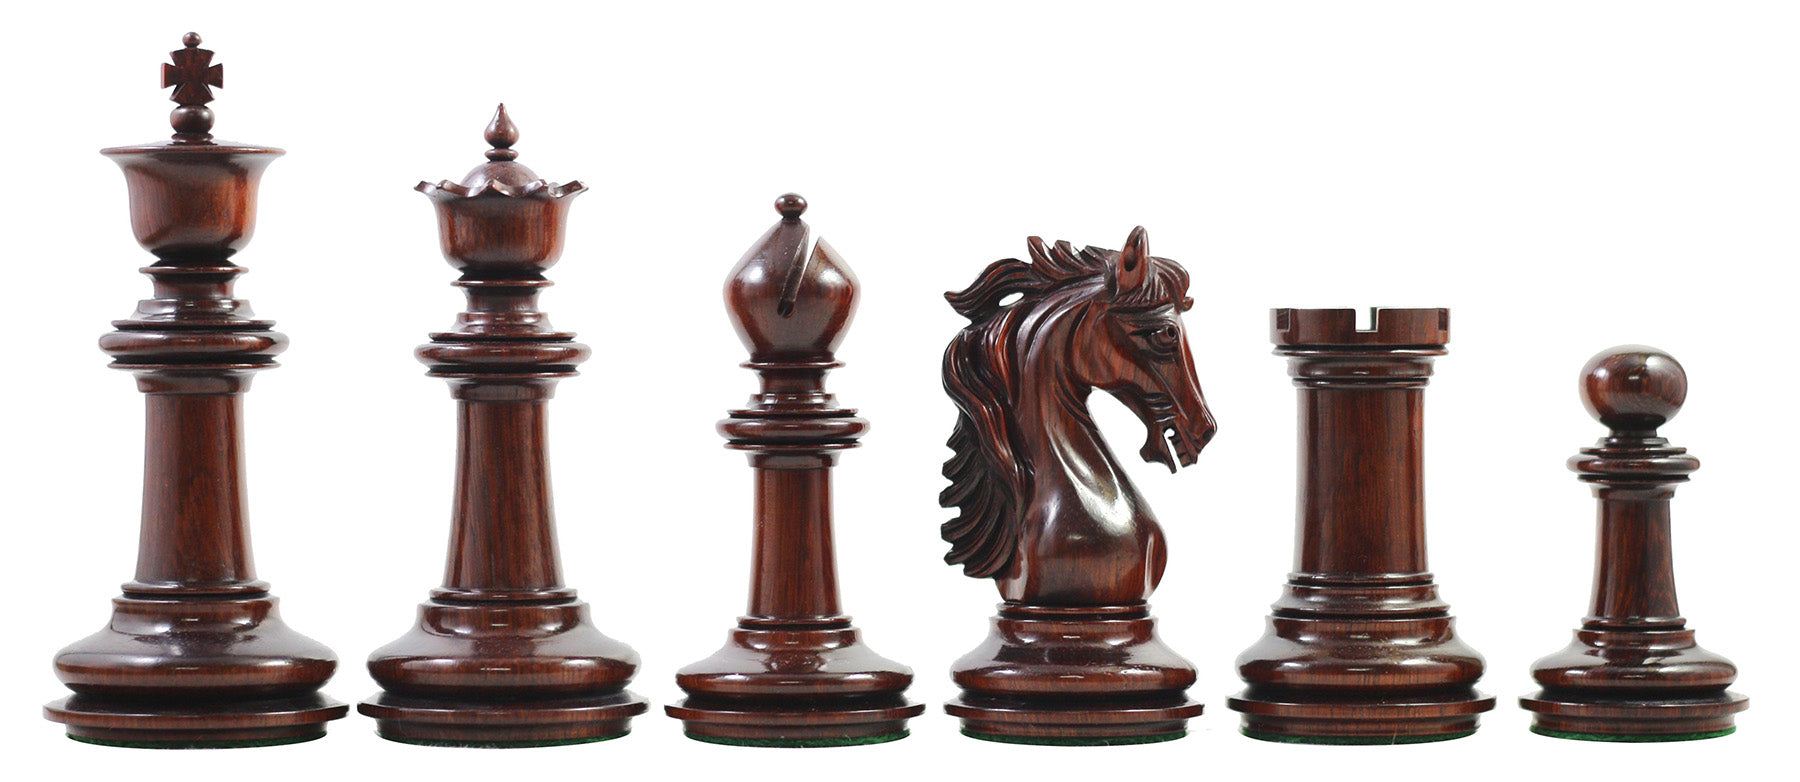 Danum Series 4.4" Premium Staunton Chess Set in Padouk Wood